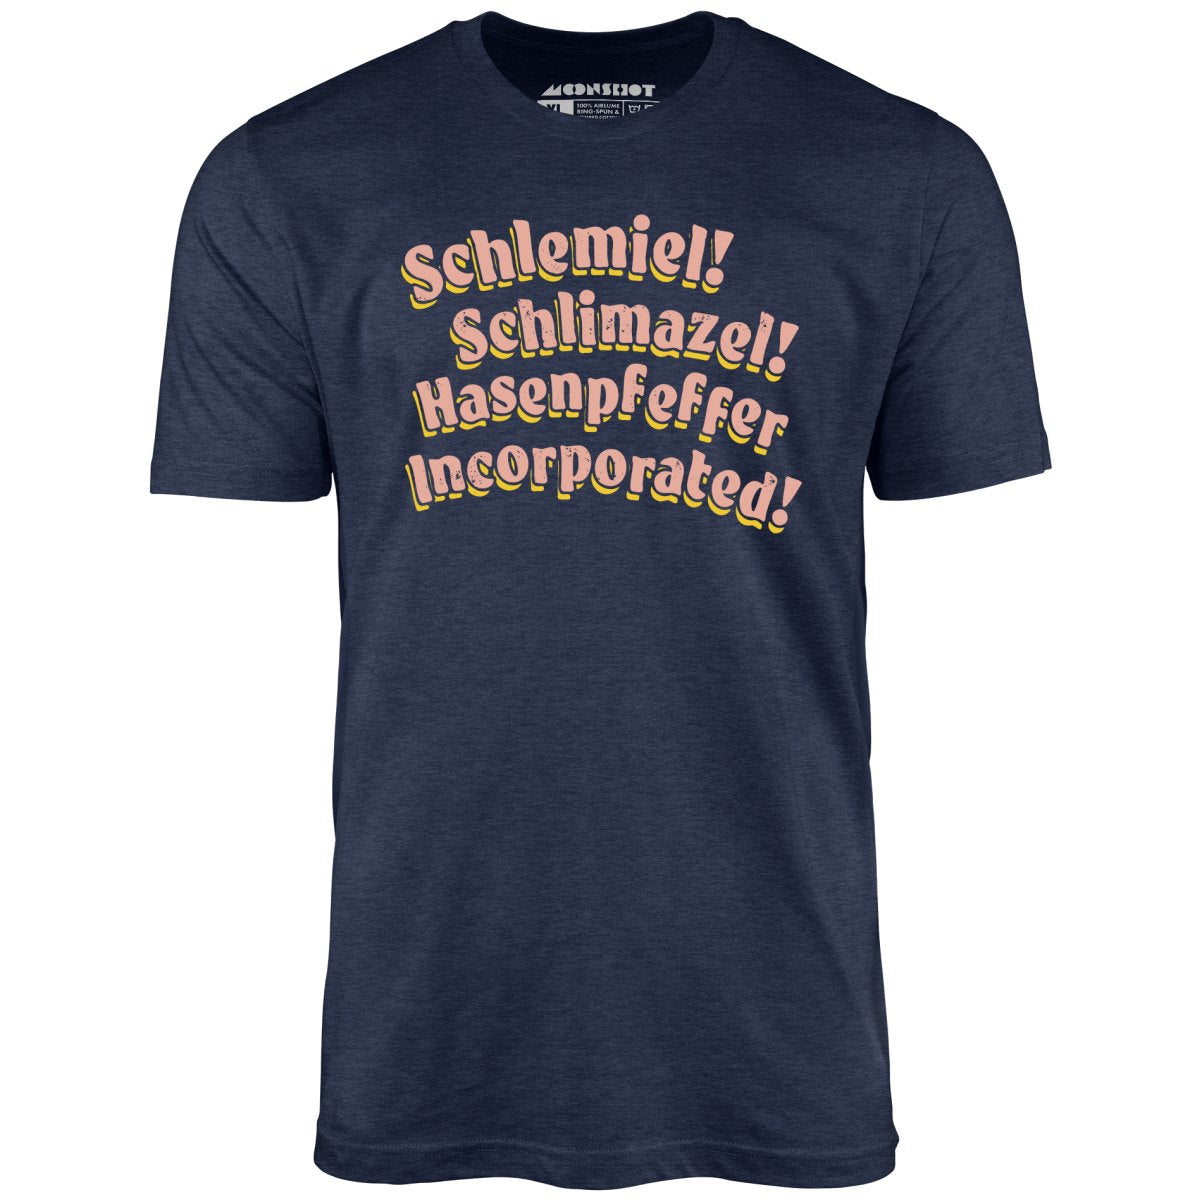 Schlemiel! Schlimazel! Hasenpfeffer Incorporated - Unisex T-Shirt